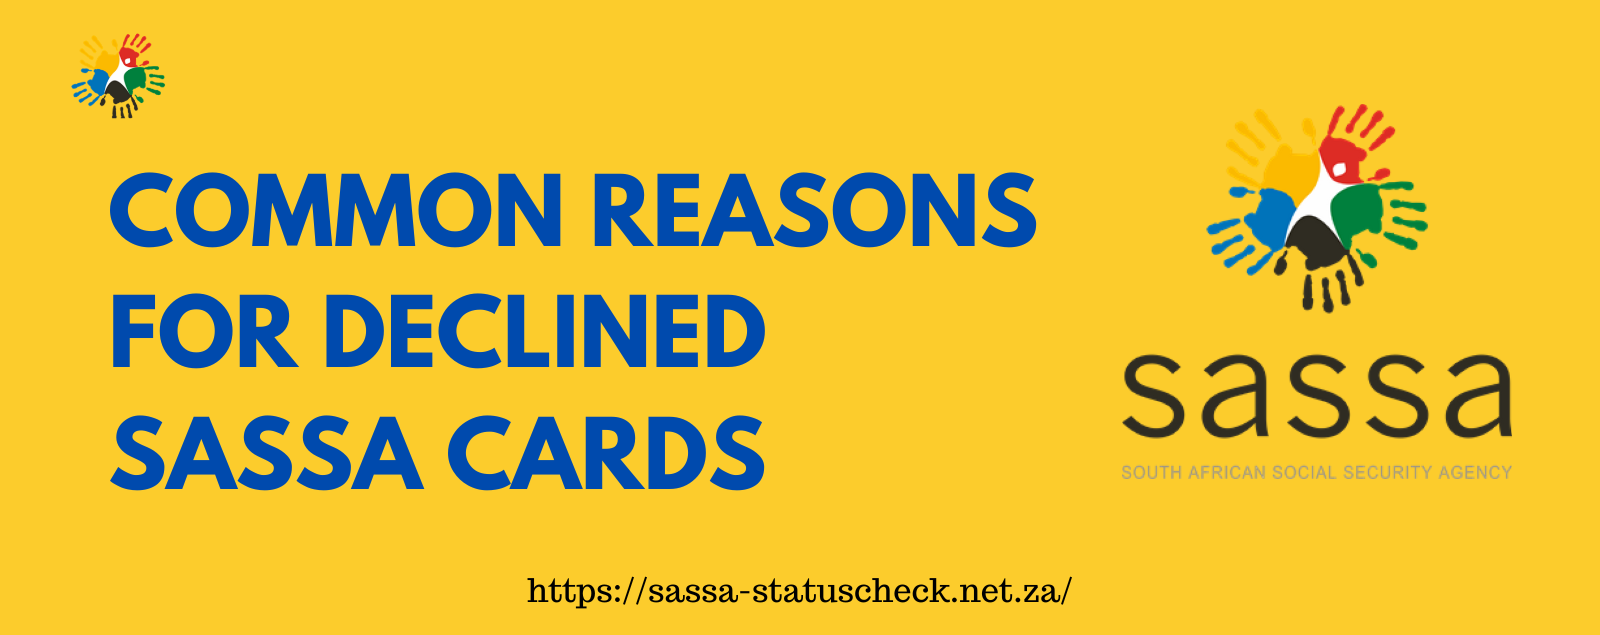 SASSA Card Declined